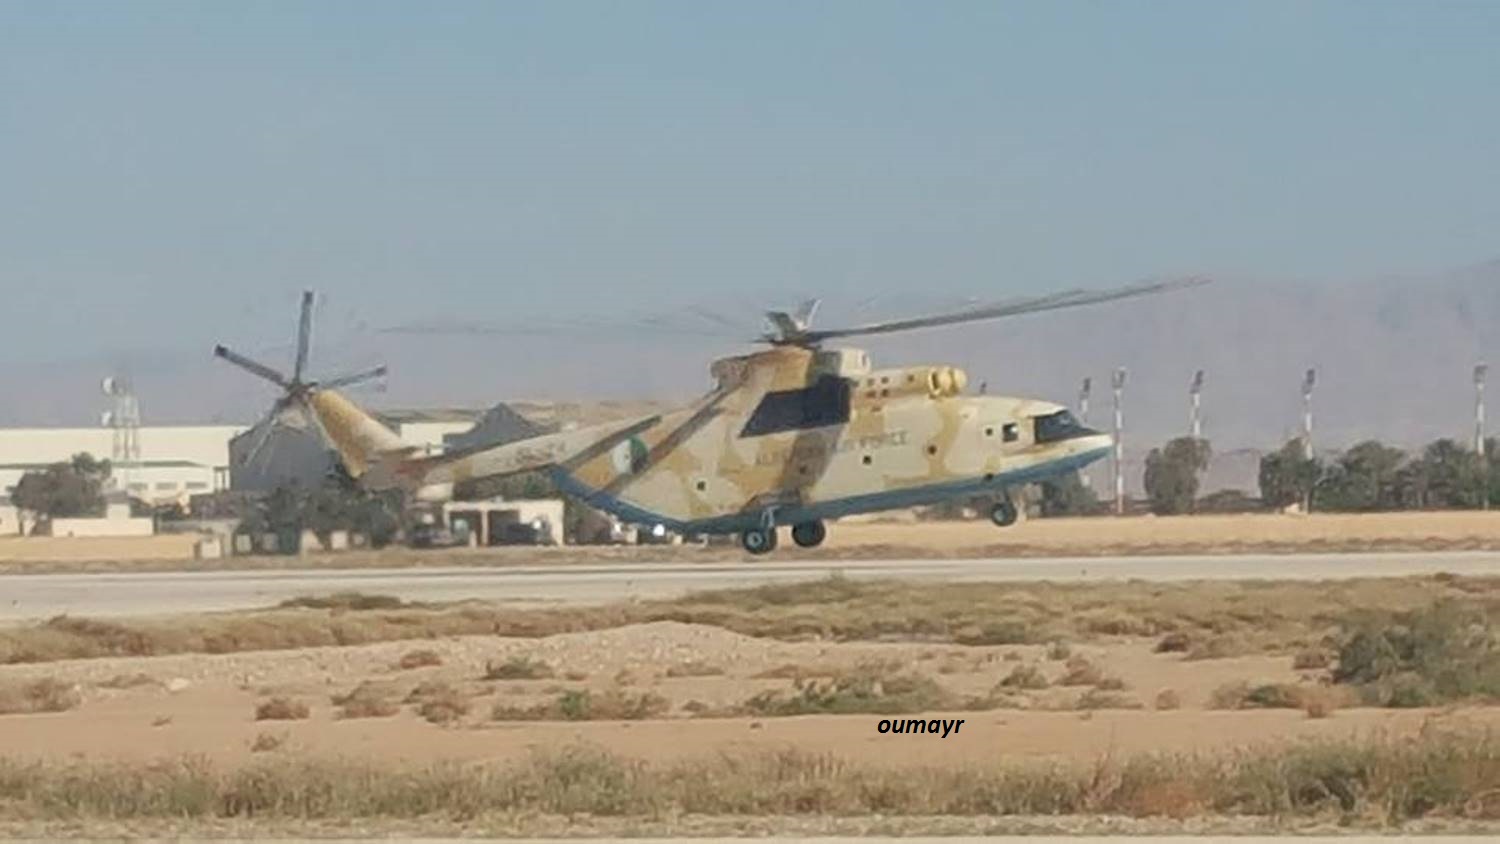 صور المروحيات الجزائرية  MI-26T2 - صفحة 18 32911447716_e589b9f910_o